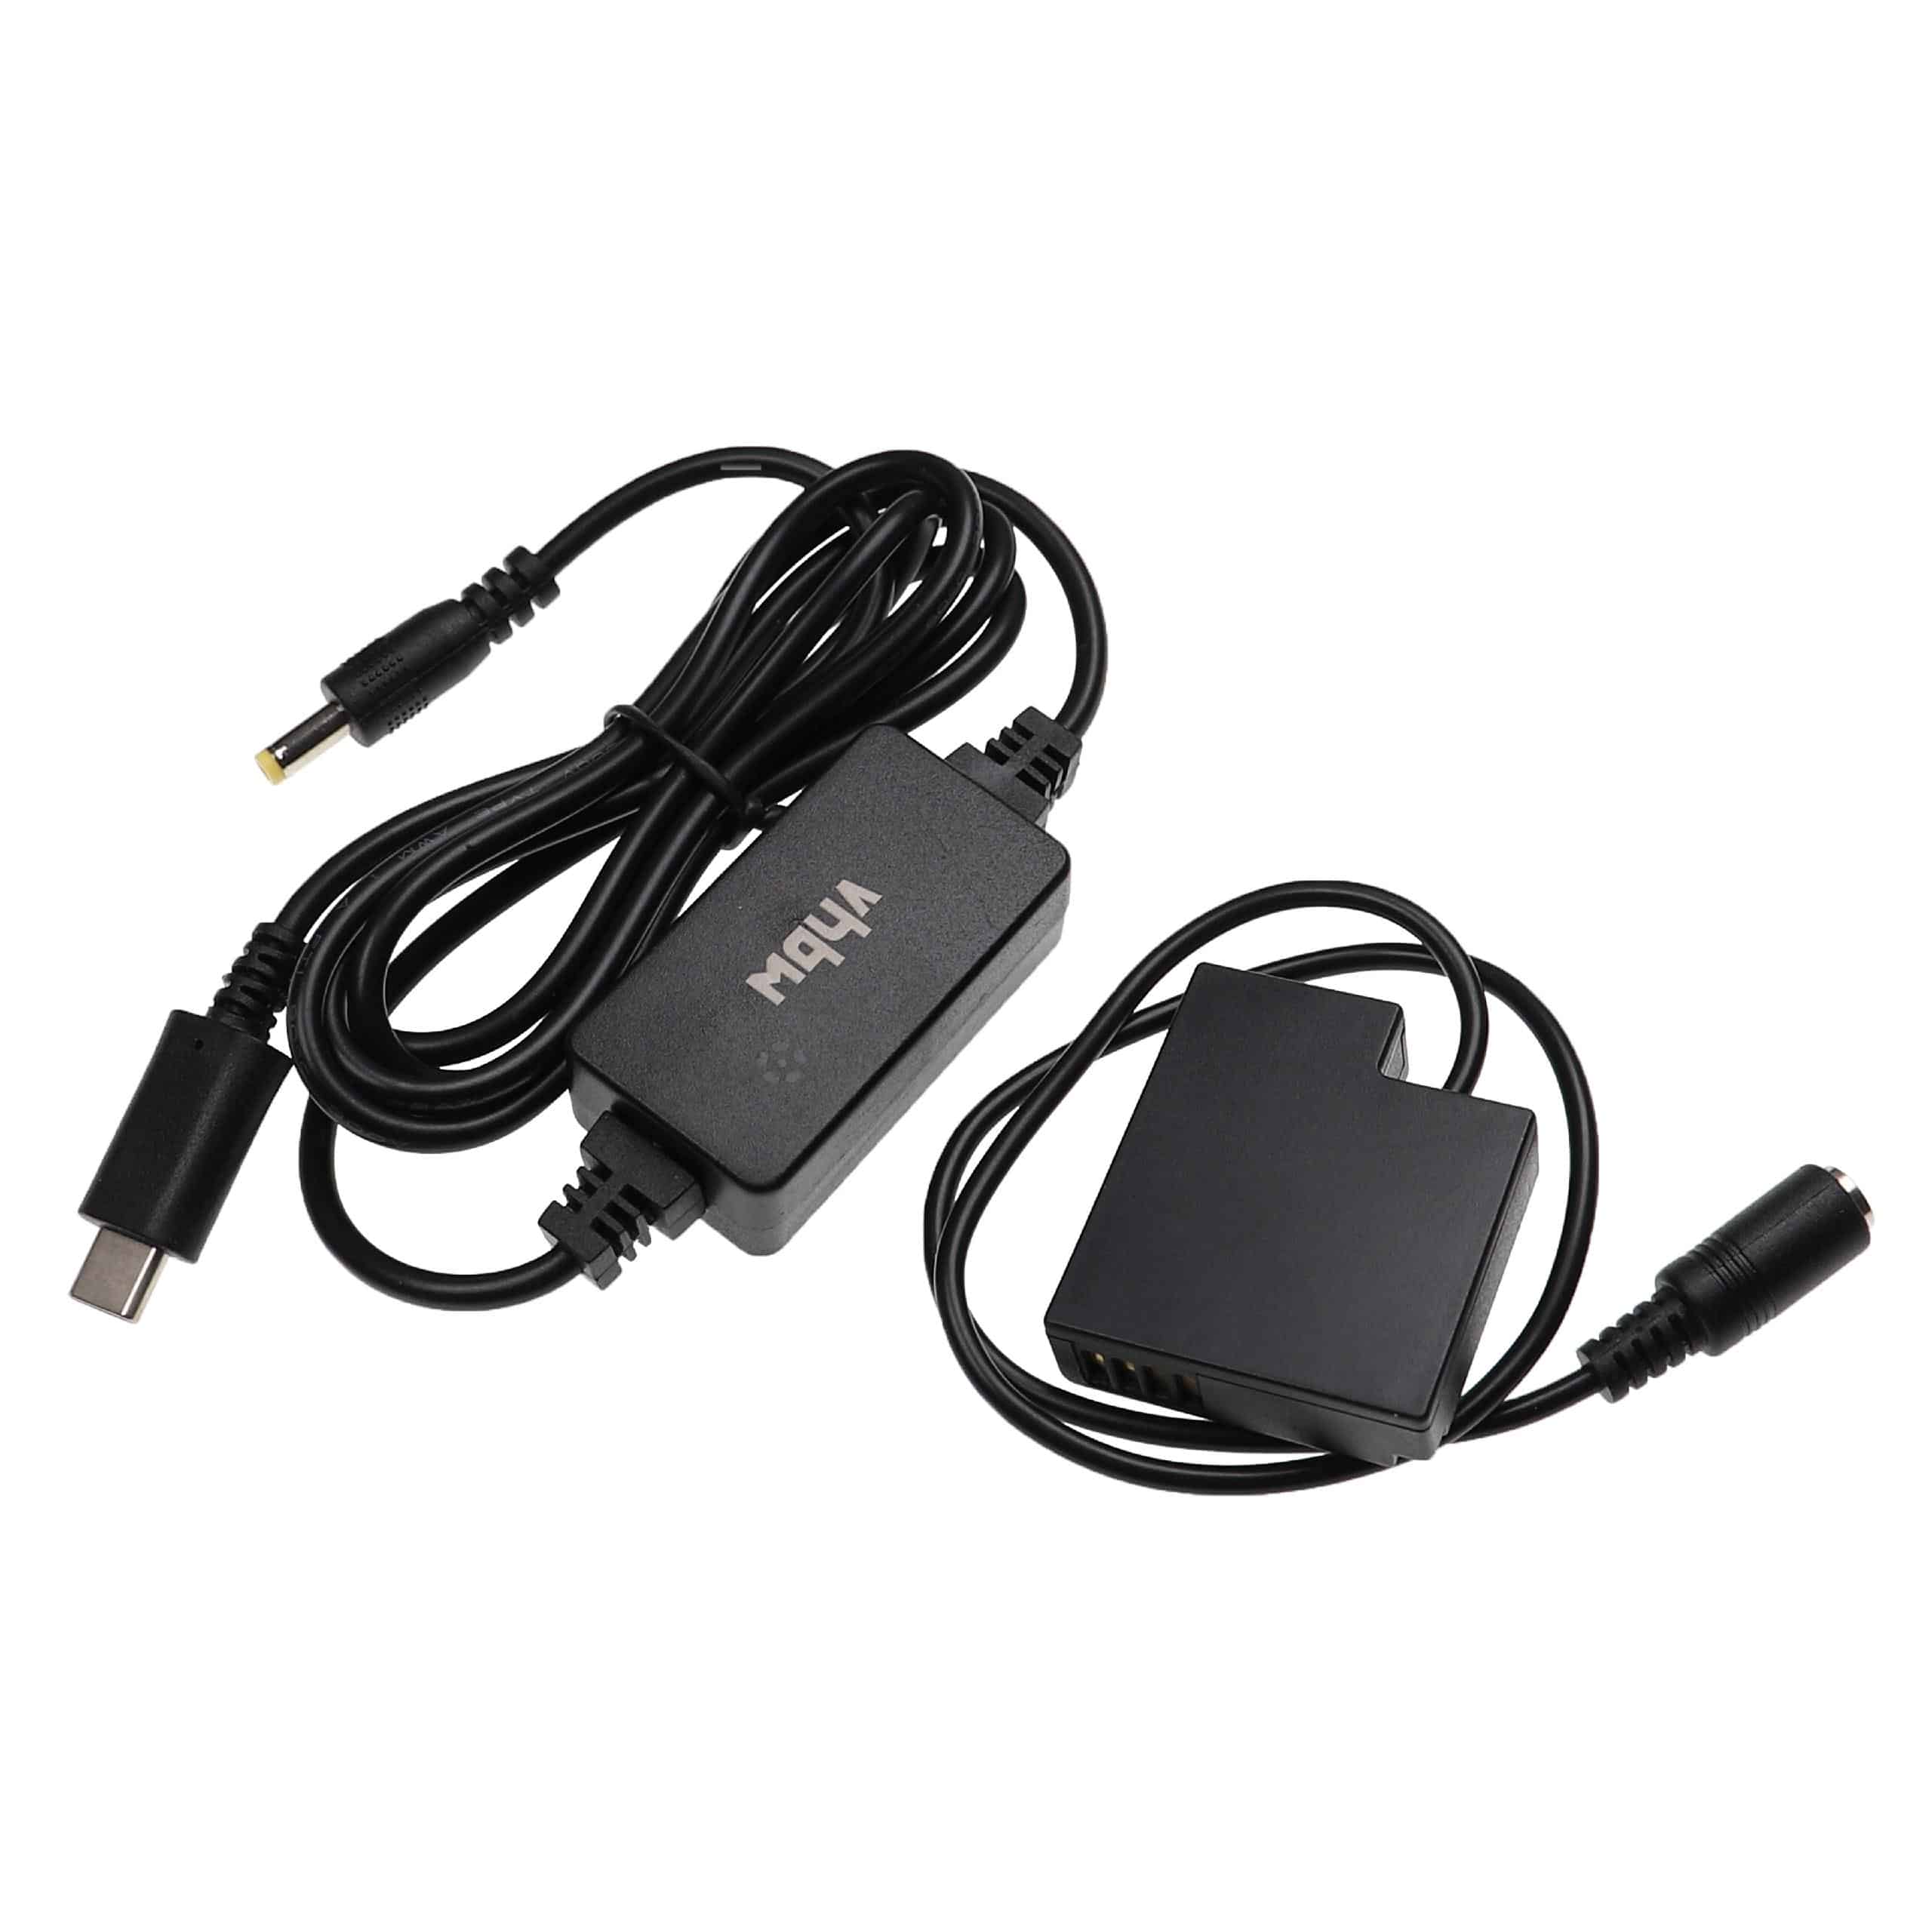 Zasilacz USB do aparatu zam. DMW-AC8 + adapter zam. Panasonic DMW-DCC15 - 2 m, 9 V 3,0 A